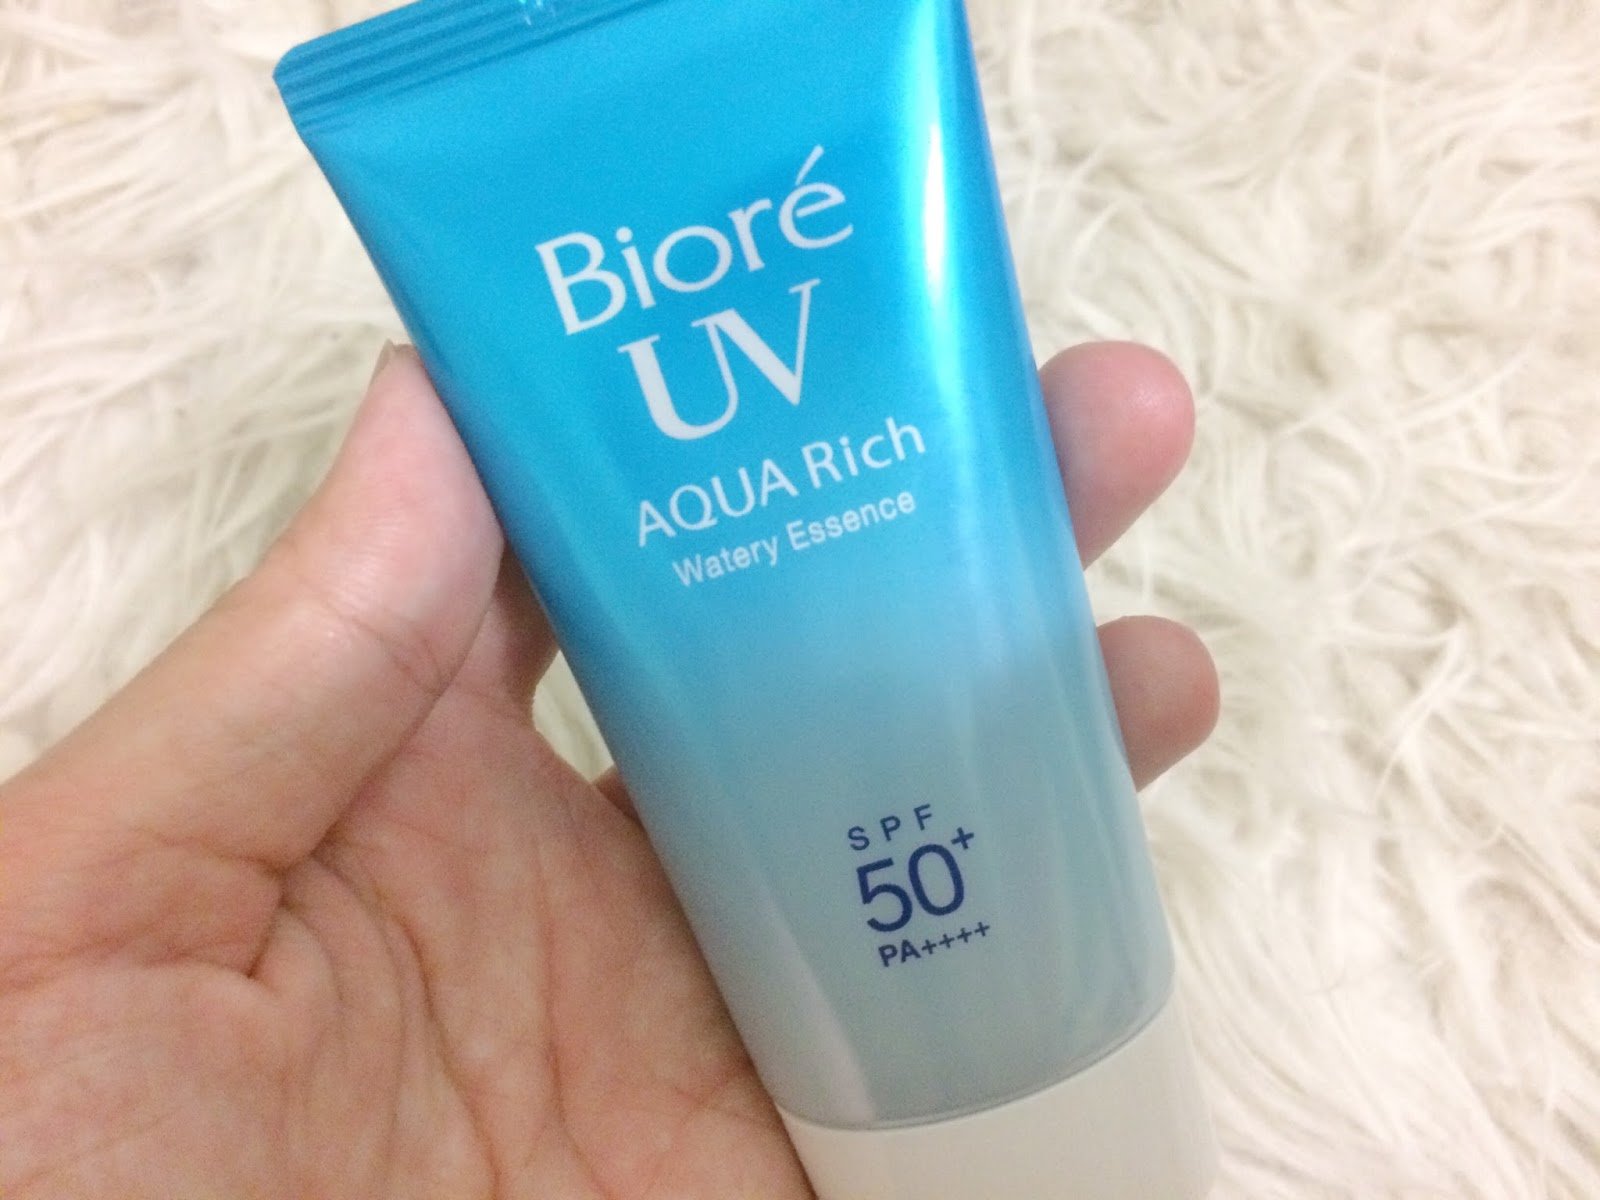 Bioré UV Aqua Rich Watery Essence